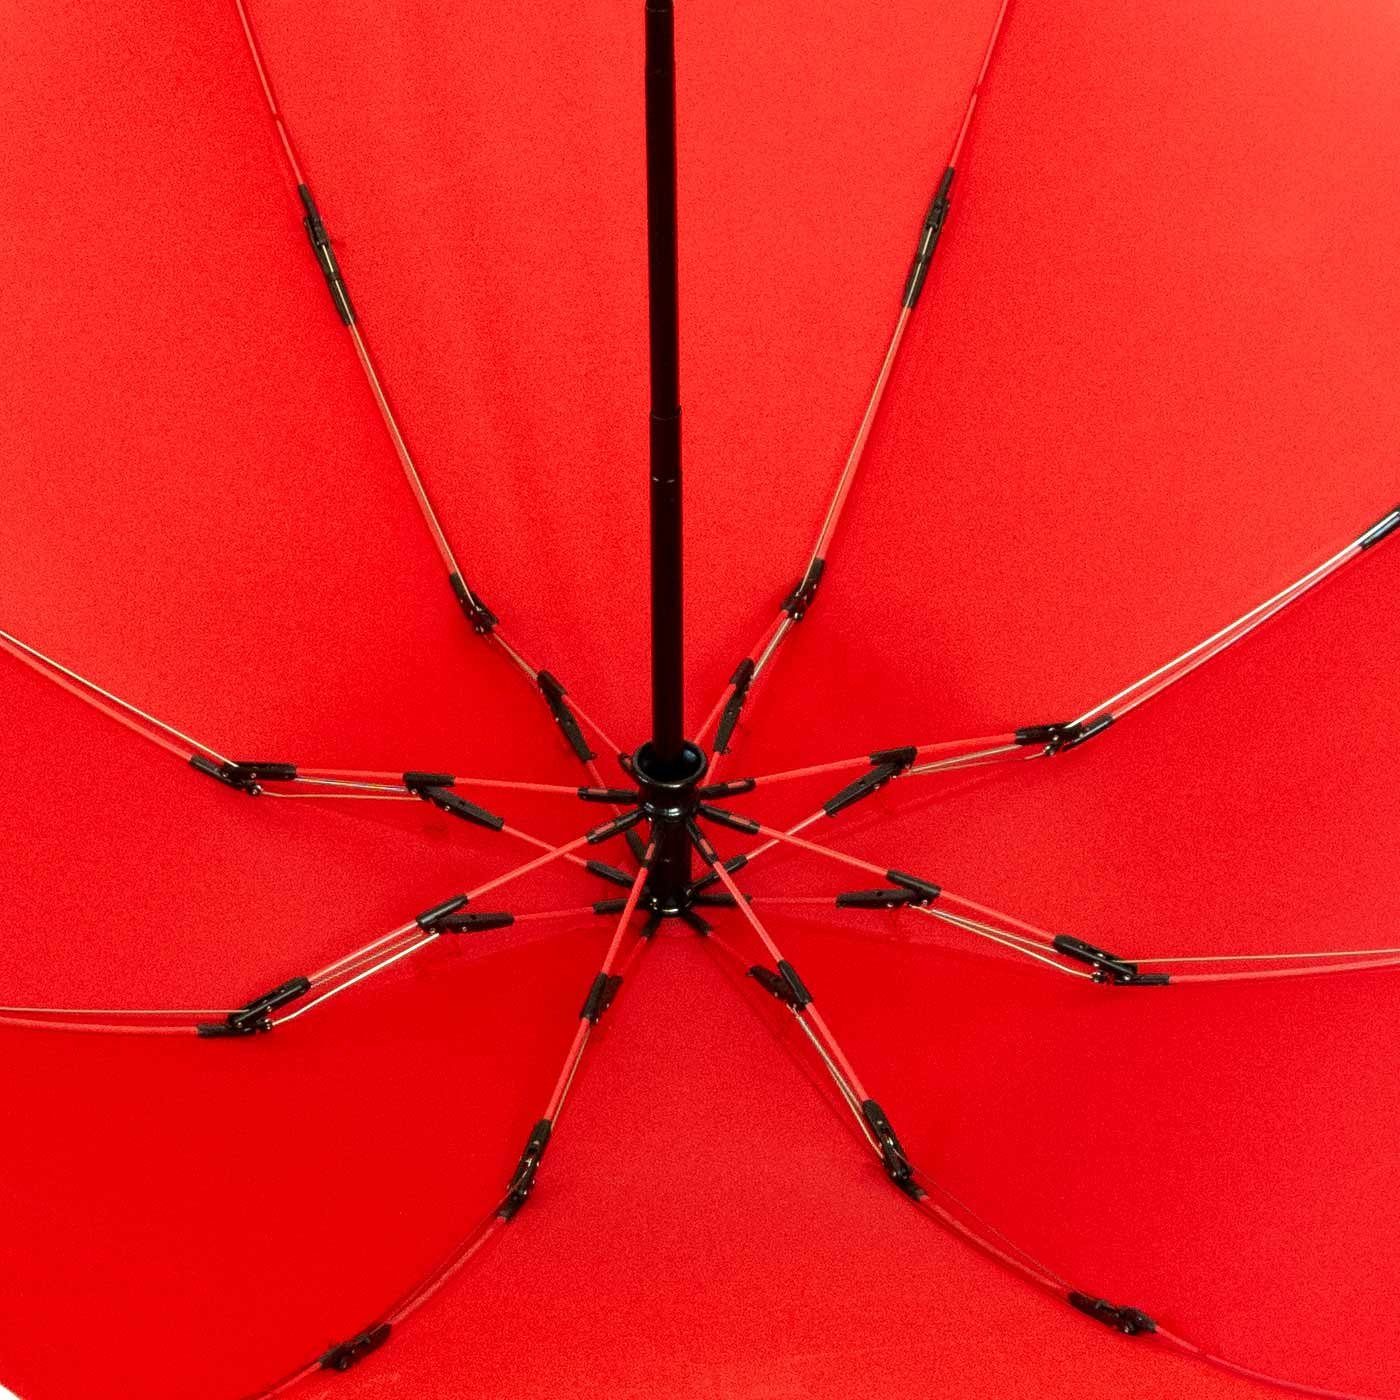 Taschenregenschirm öffnender umgekehrt Reverse Speichen Fiberglas-Automatiksch, stabilen rot bunten iX-brella mit